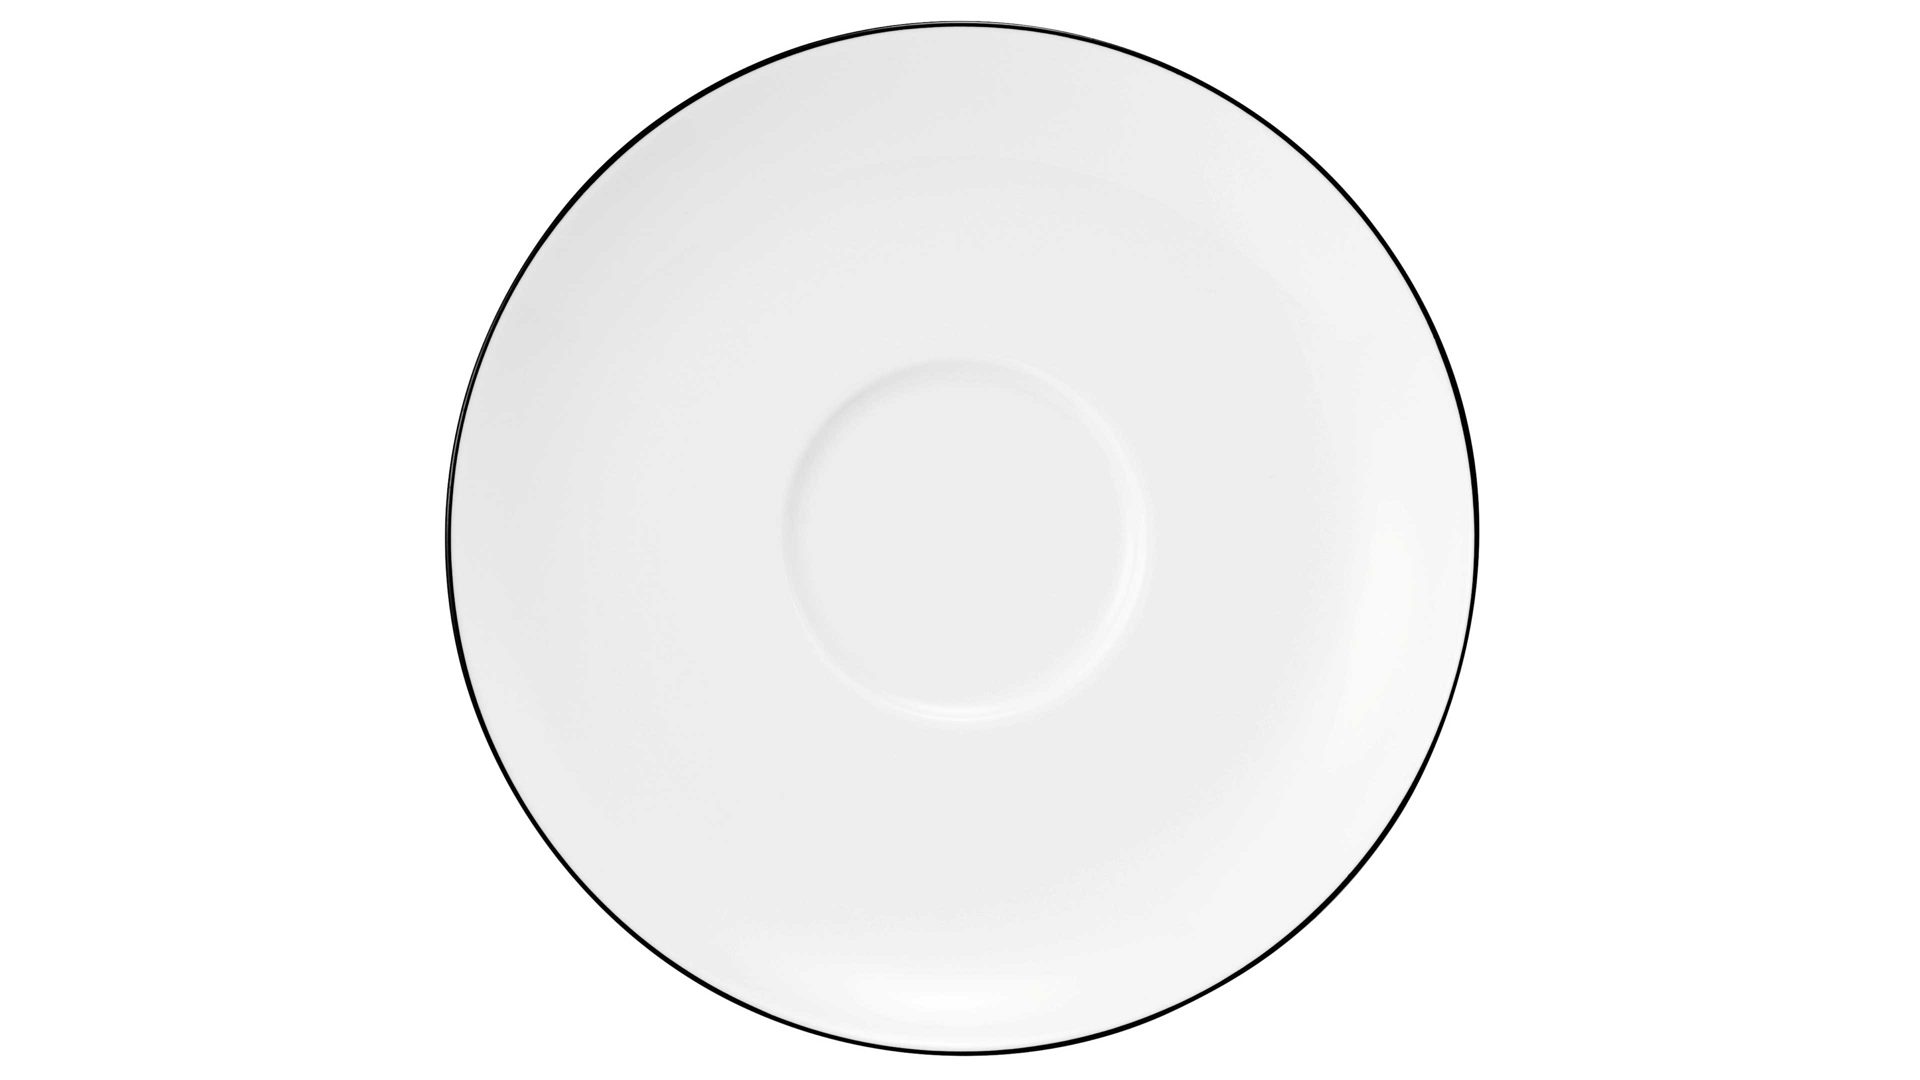 Unterteller Seltmann aus Porzellan in Weiß Seltmann Lido – Milchkaffee-Unterteller weißes Porzellan – Durchmesser ca. 16 cm